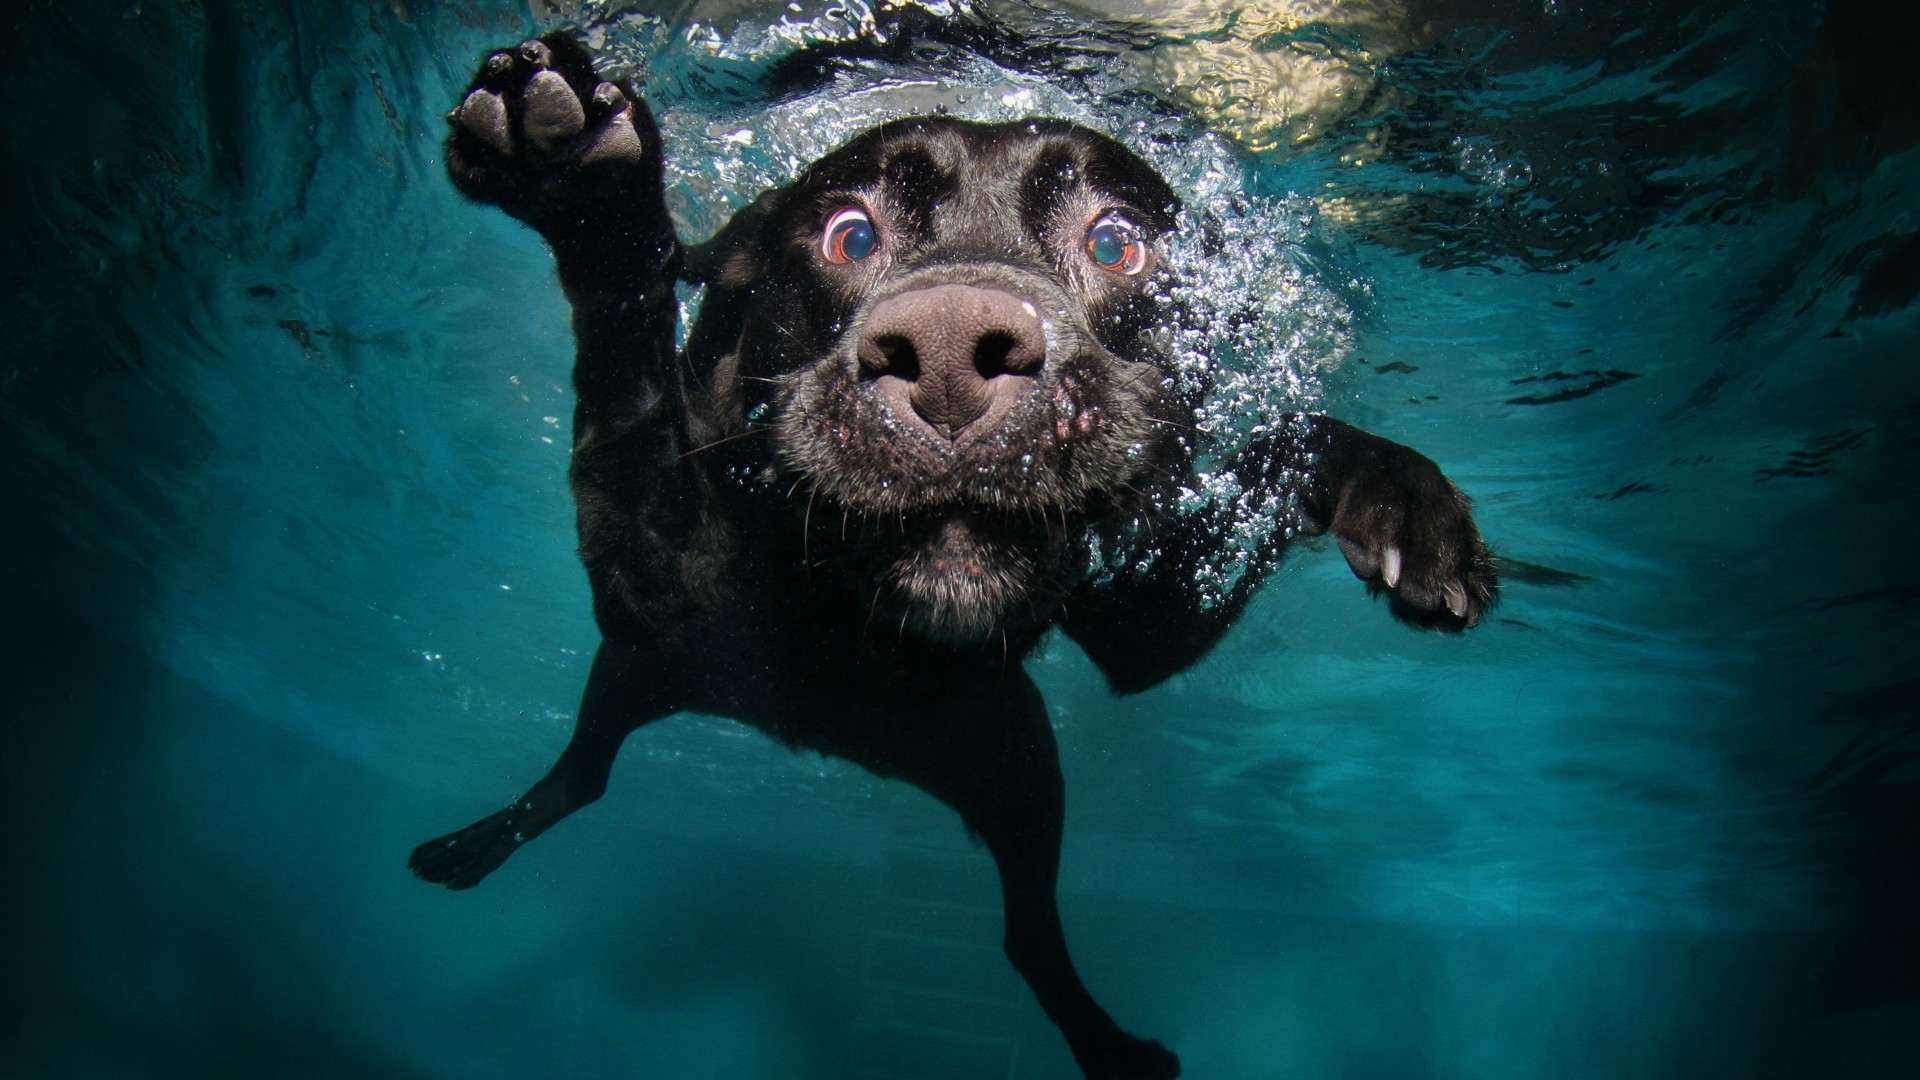 Собака, 5k, 4k, щенок, черный, подводный, забавный, животные, питомец, водные пузыри, Dog, 5k, 4k wallpaper, puppy, black, underwater, funny, animal, pet, water bubbles (horizontal)